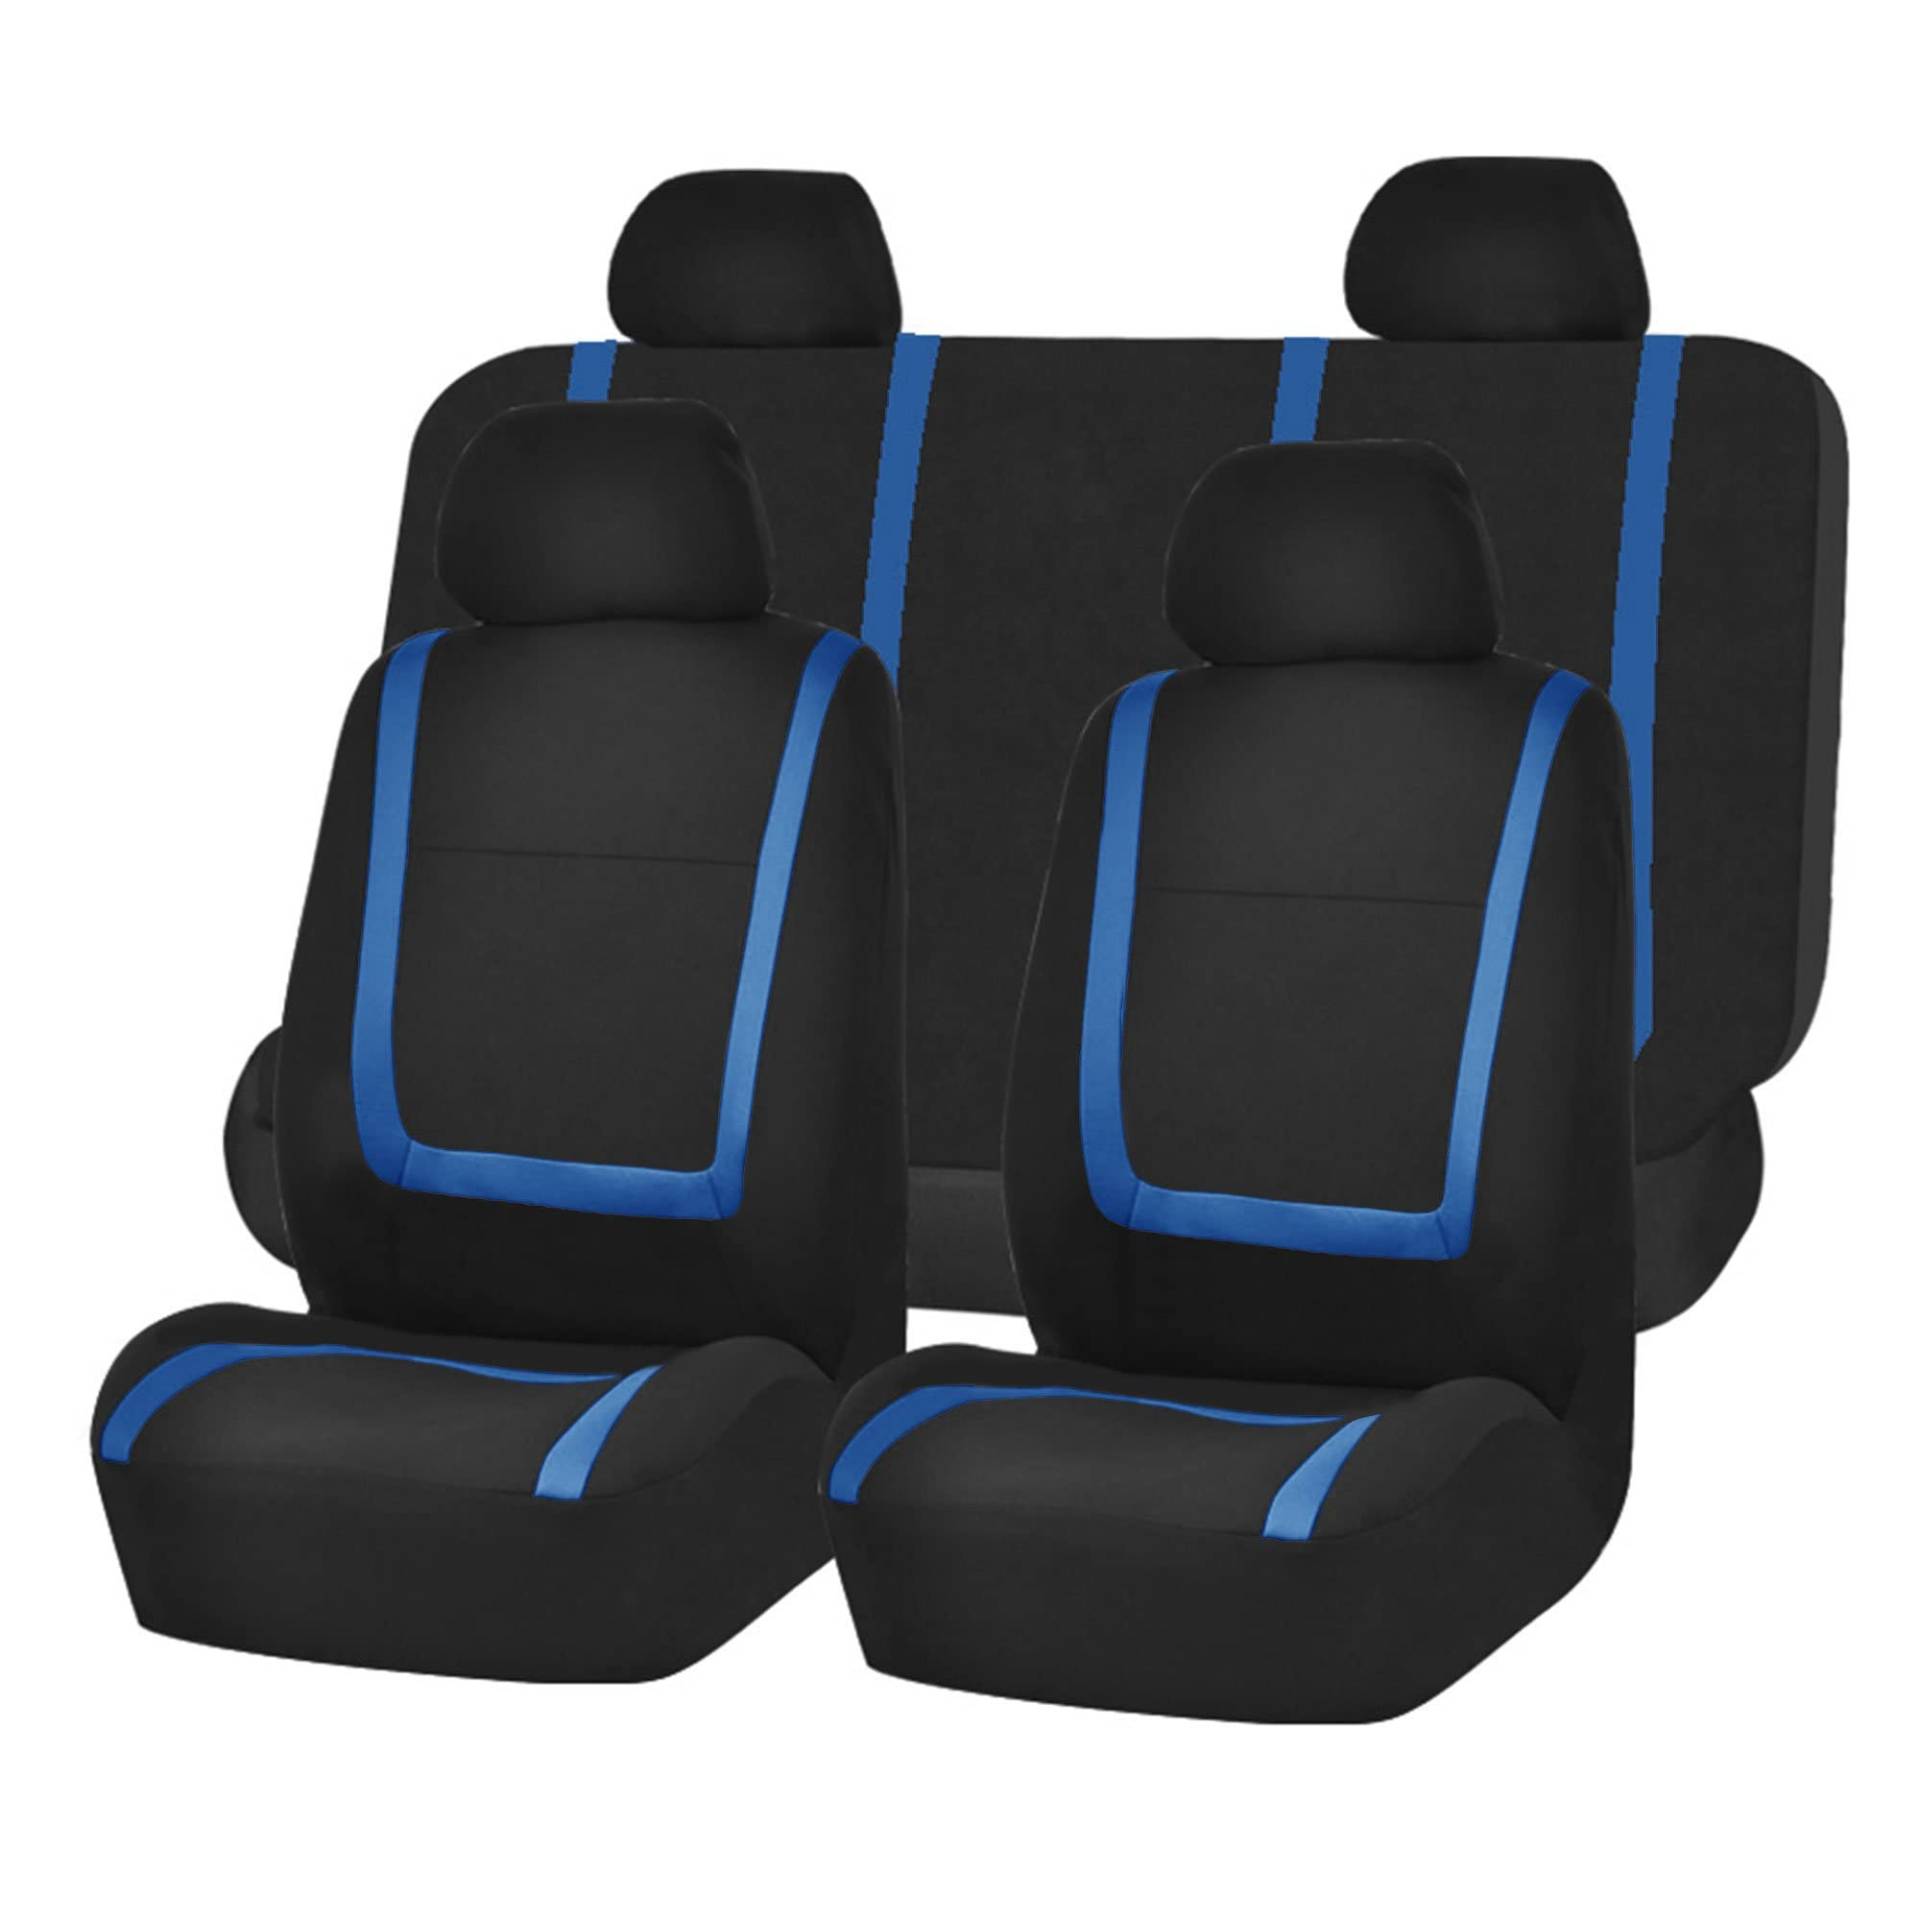 HIPATU Autositzbezüge Komplettset für VW Touareg 2010-2018+, Atmungsaktiv Polyesternetz Sitzbezüge Auto Schonbezüge Set Airbag-Kompatible Sitzbezügesets Auto Sitzschoner,B-Blue von HIPATU